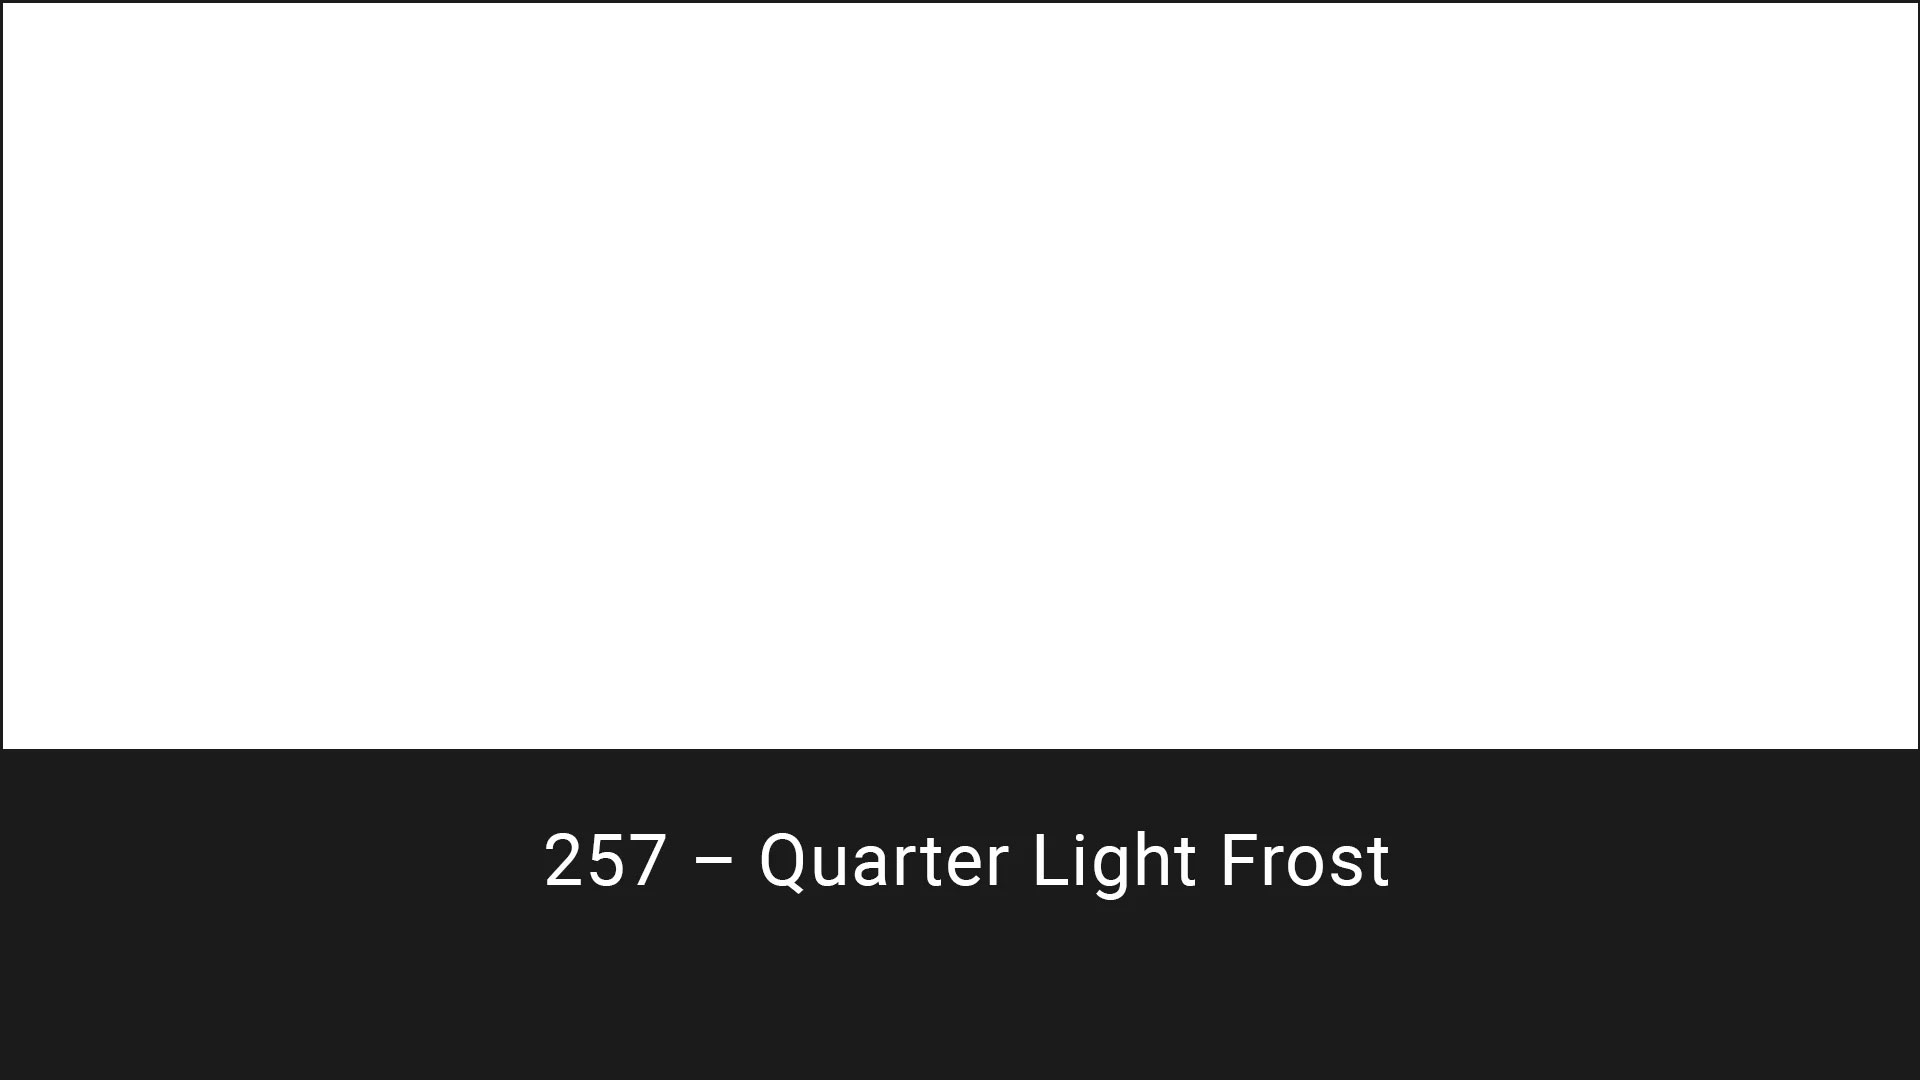 Cotech filters 257 Quarter Light Frost